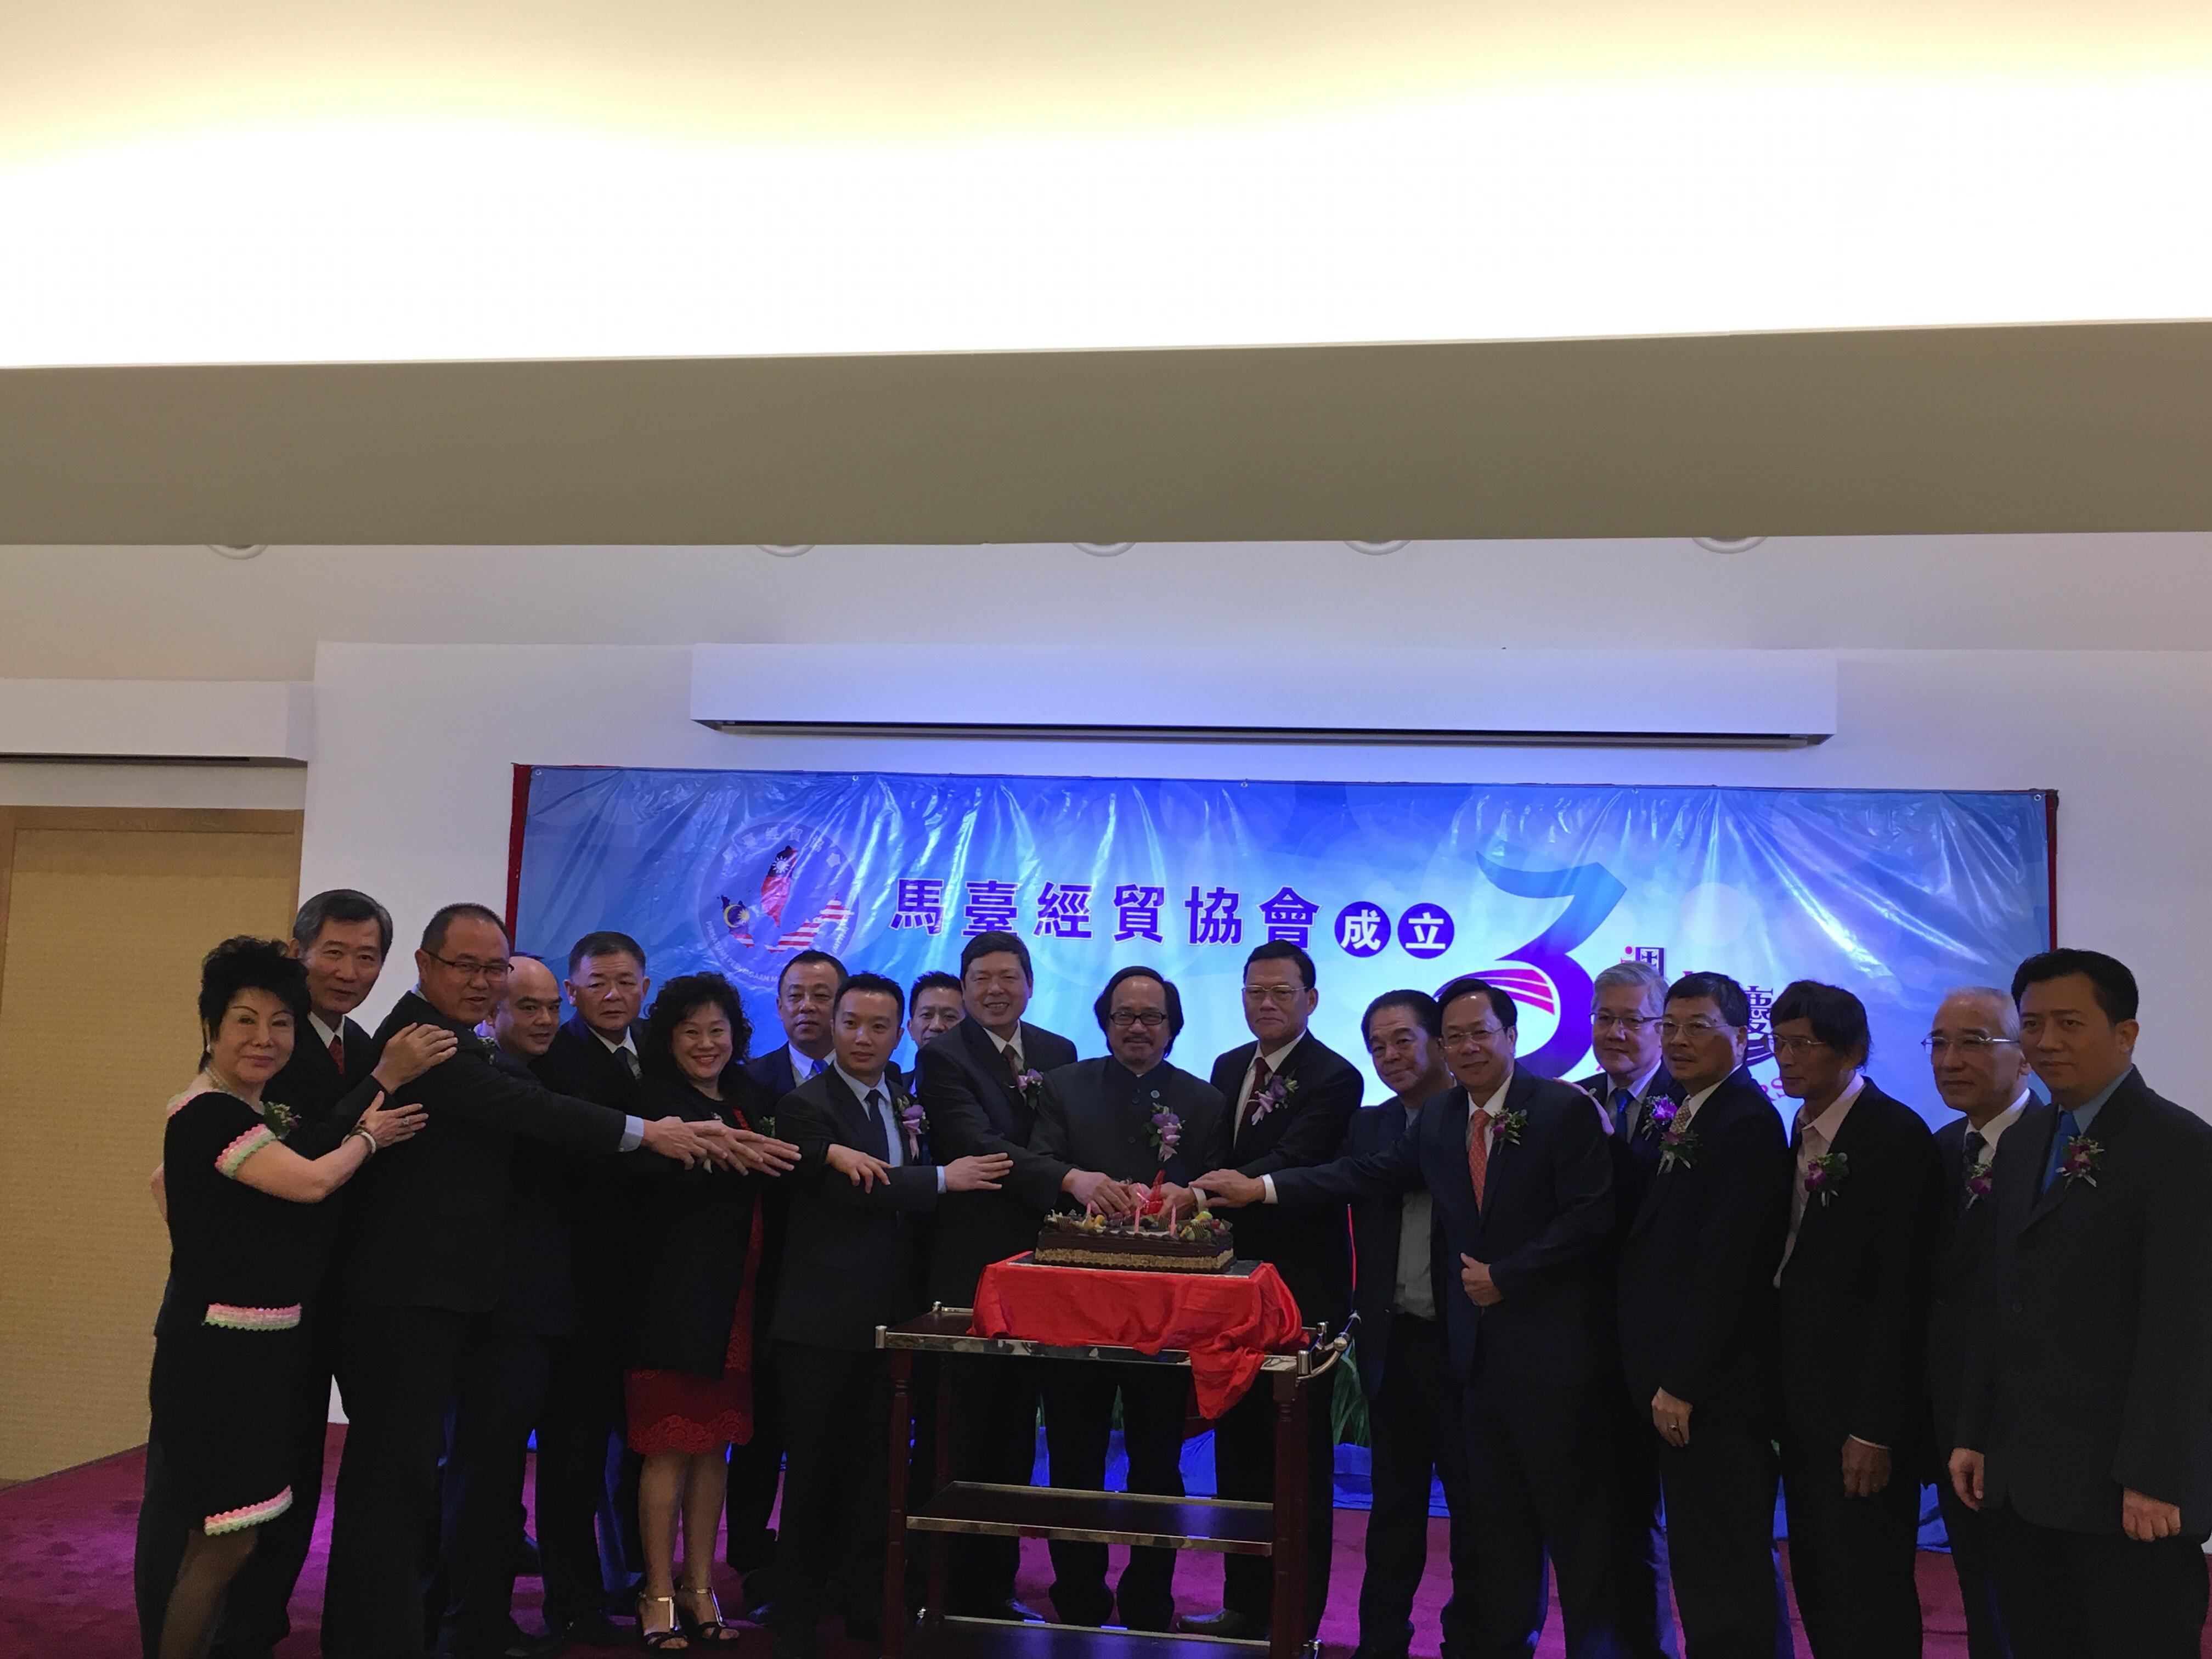 Wakil Chang, James Chi-Ping(kanan, lapan) menghadiri forum「The prospect for Malaysia-Taiwan trade」 daripada Mal Tai Holdings Sdn Bhd dan mengambil gambar bersama-sama
